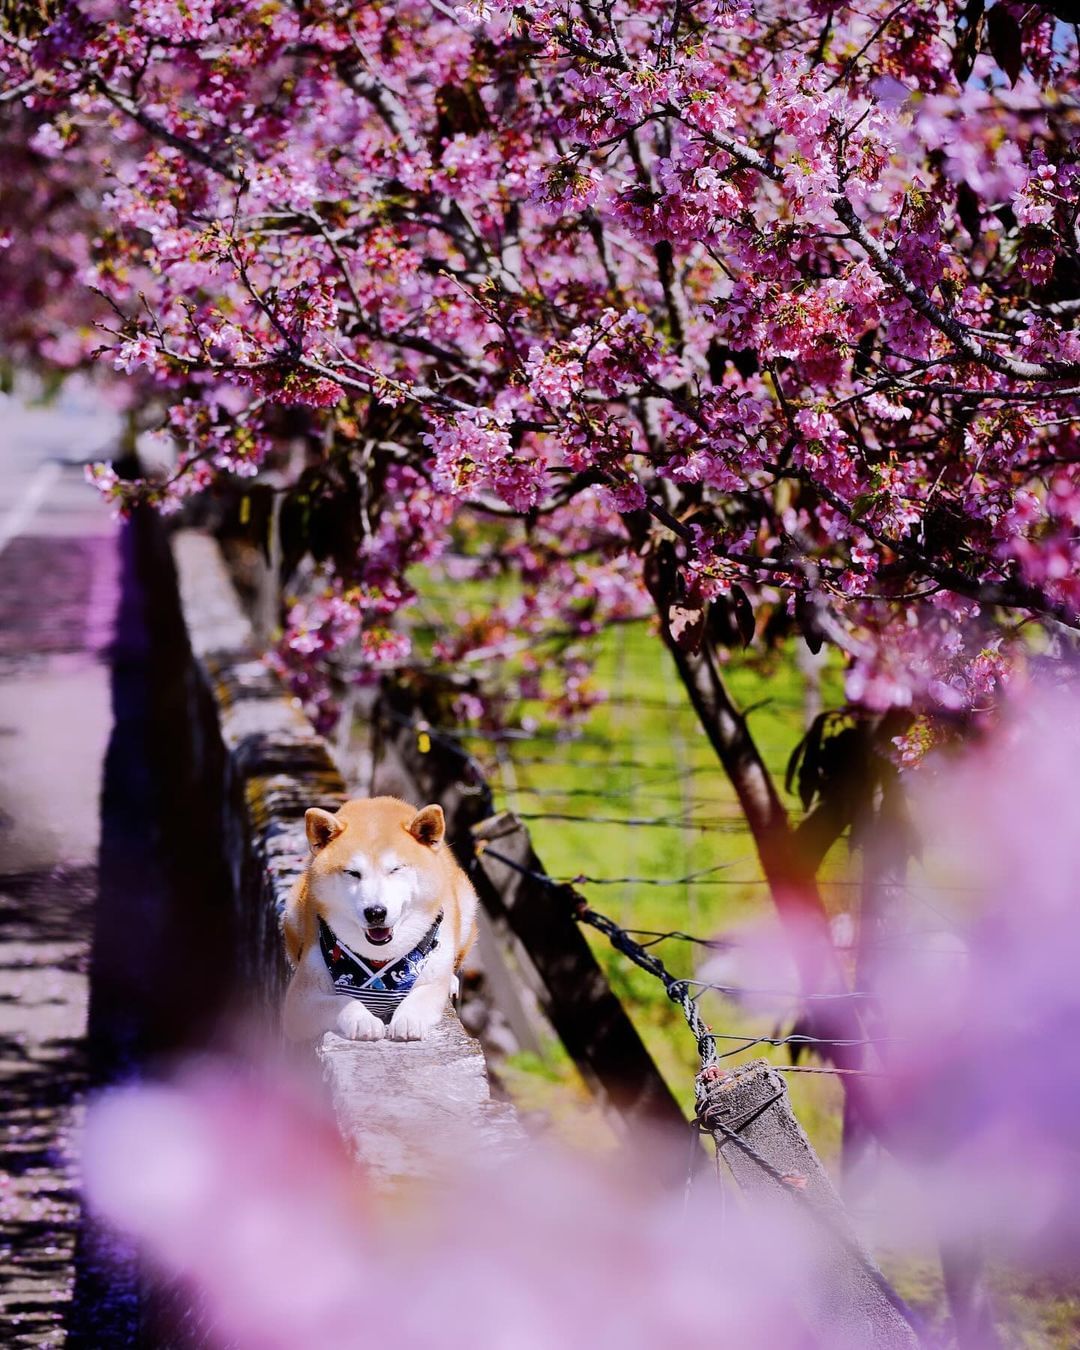 台中粉色花海接力展开~🌸大家都赏樱了吗~~~？还没去到福寿山和武陵农场也没关系！台中处处充满温柔的粉红花卉，除了樱花还有 #九重葛 的盛开～绵延了浪漫的三月风景